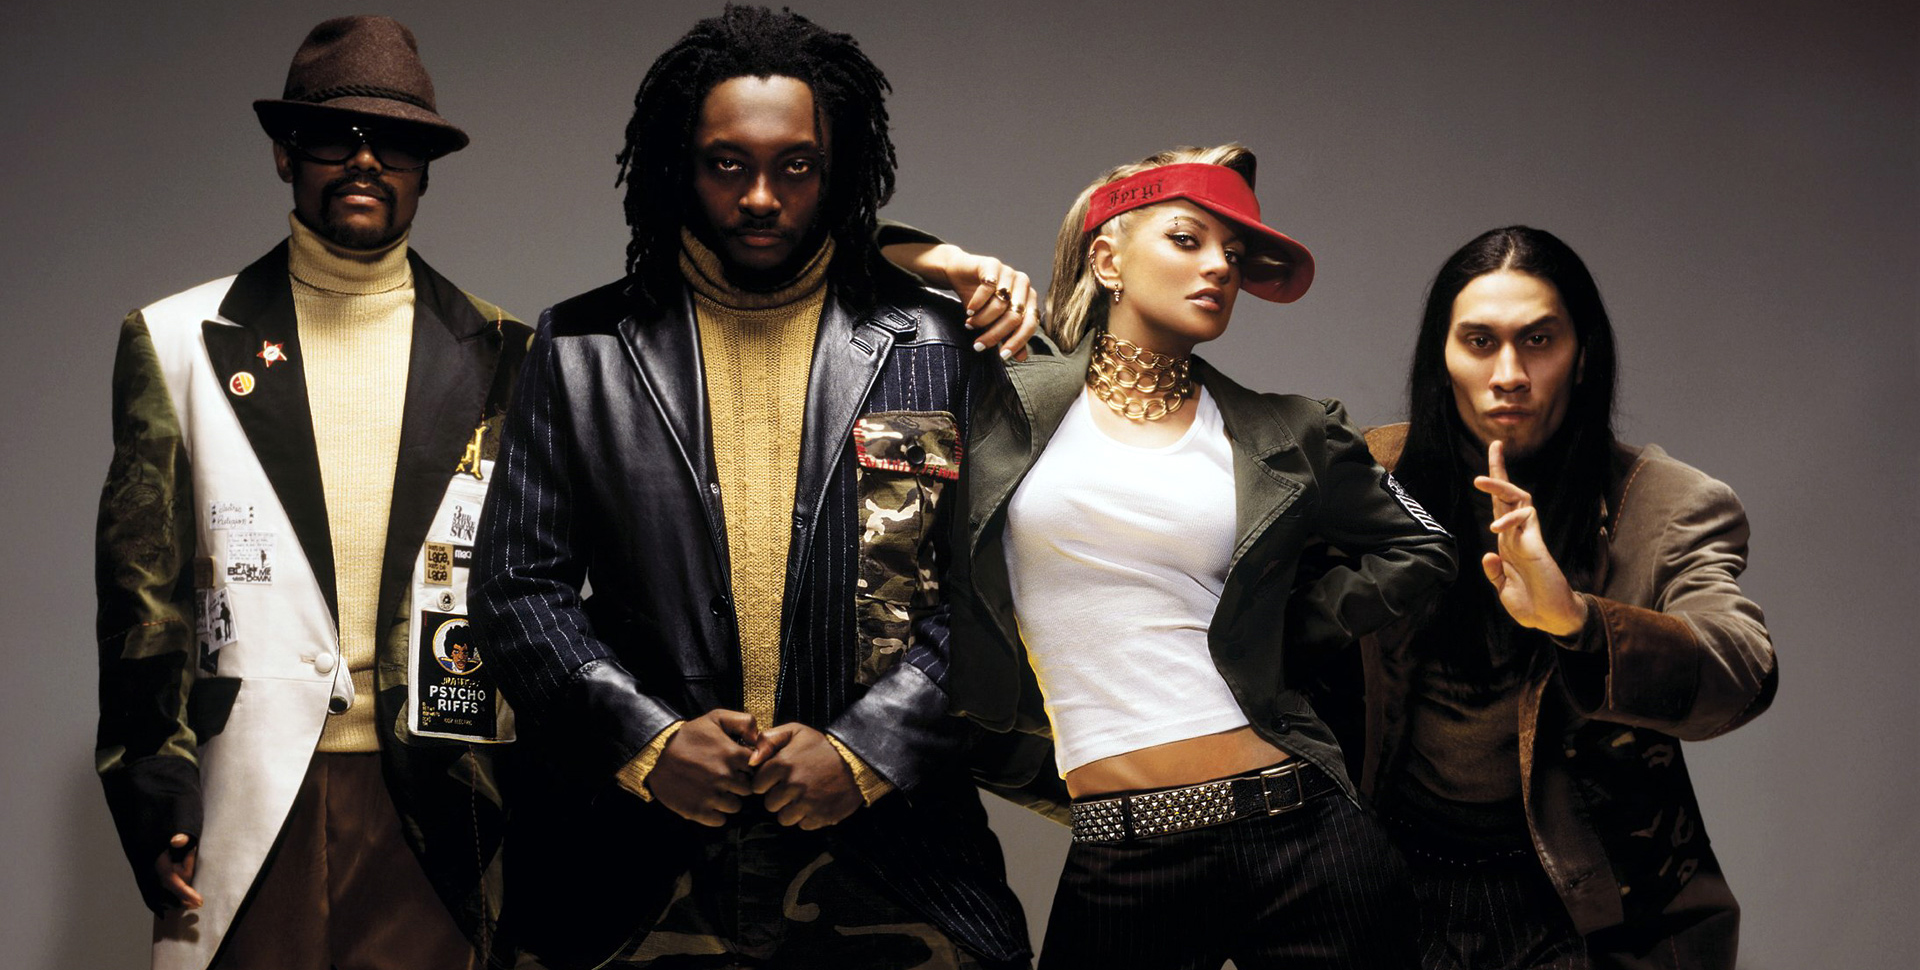 Confirmado: Fergie dejó a los Black Eyed Peas